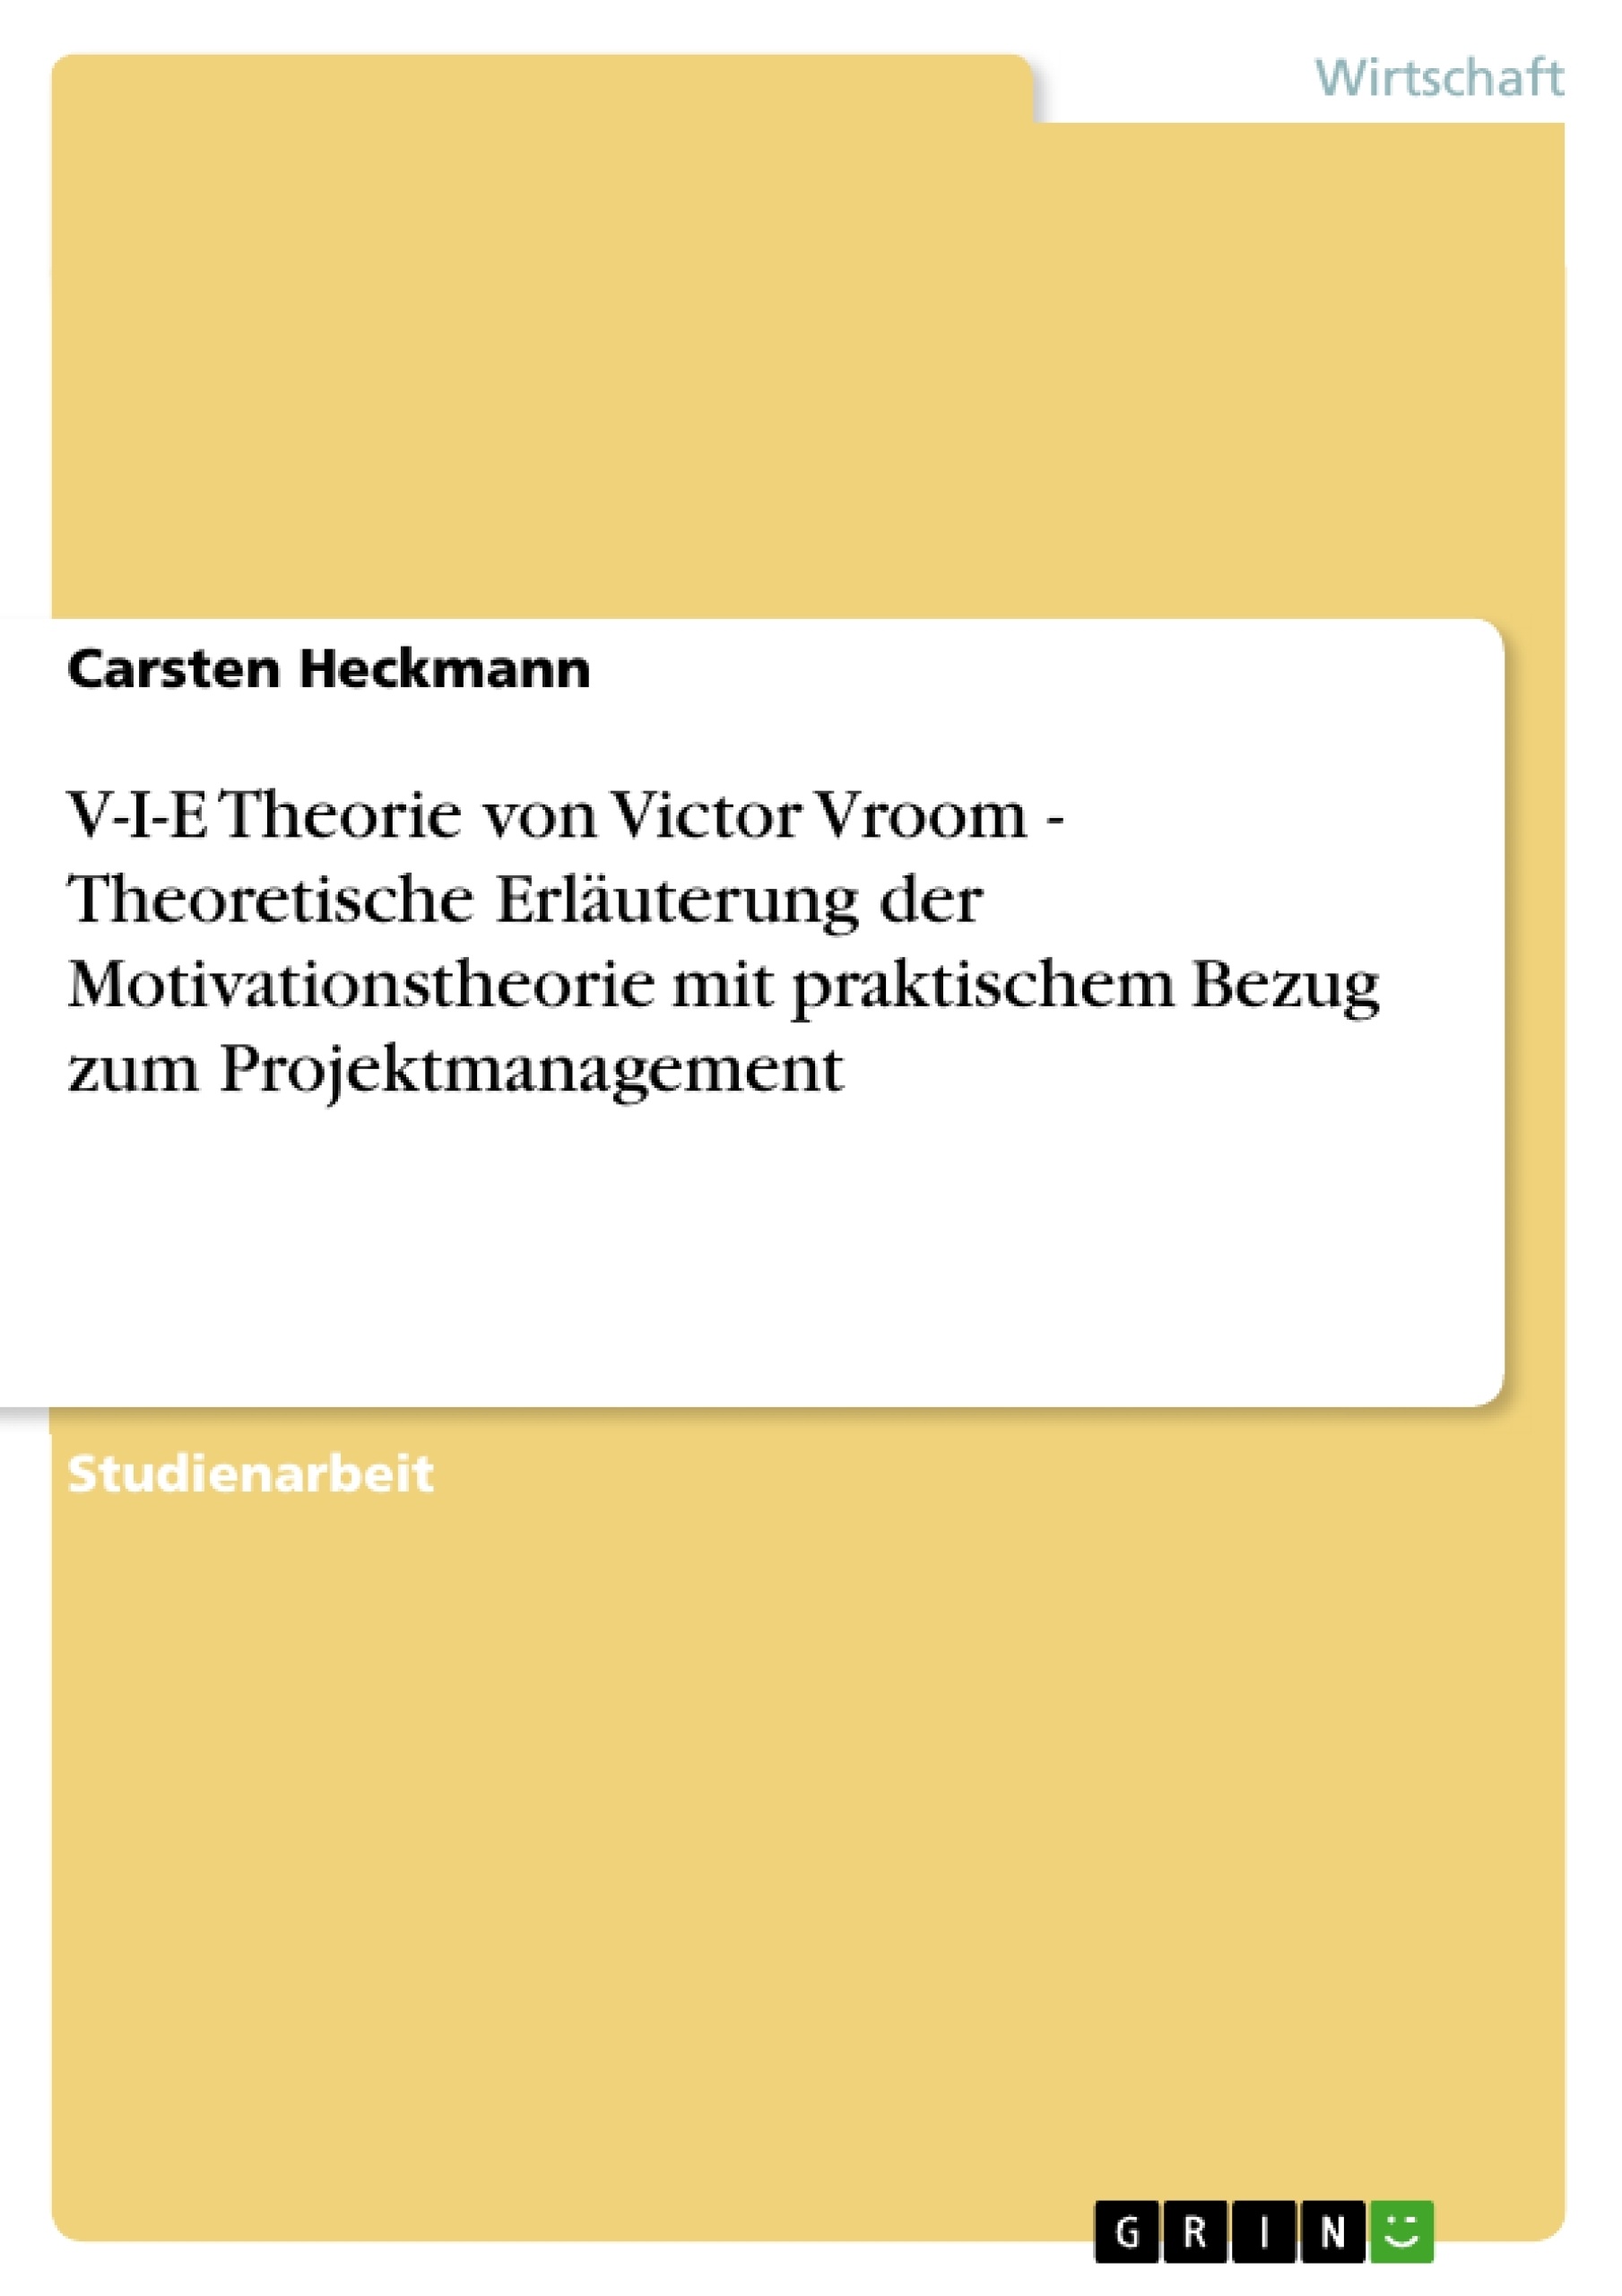 Titel: V-I-E Theorie von Victor Vroom - Theoretische Erläuterung der Motivationstheorie mit praktischem Bezug zum Projektmanagement